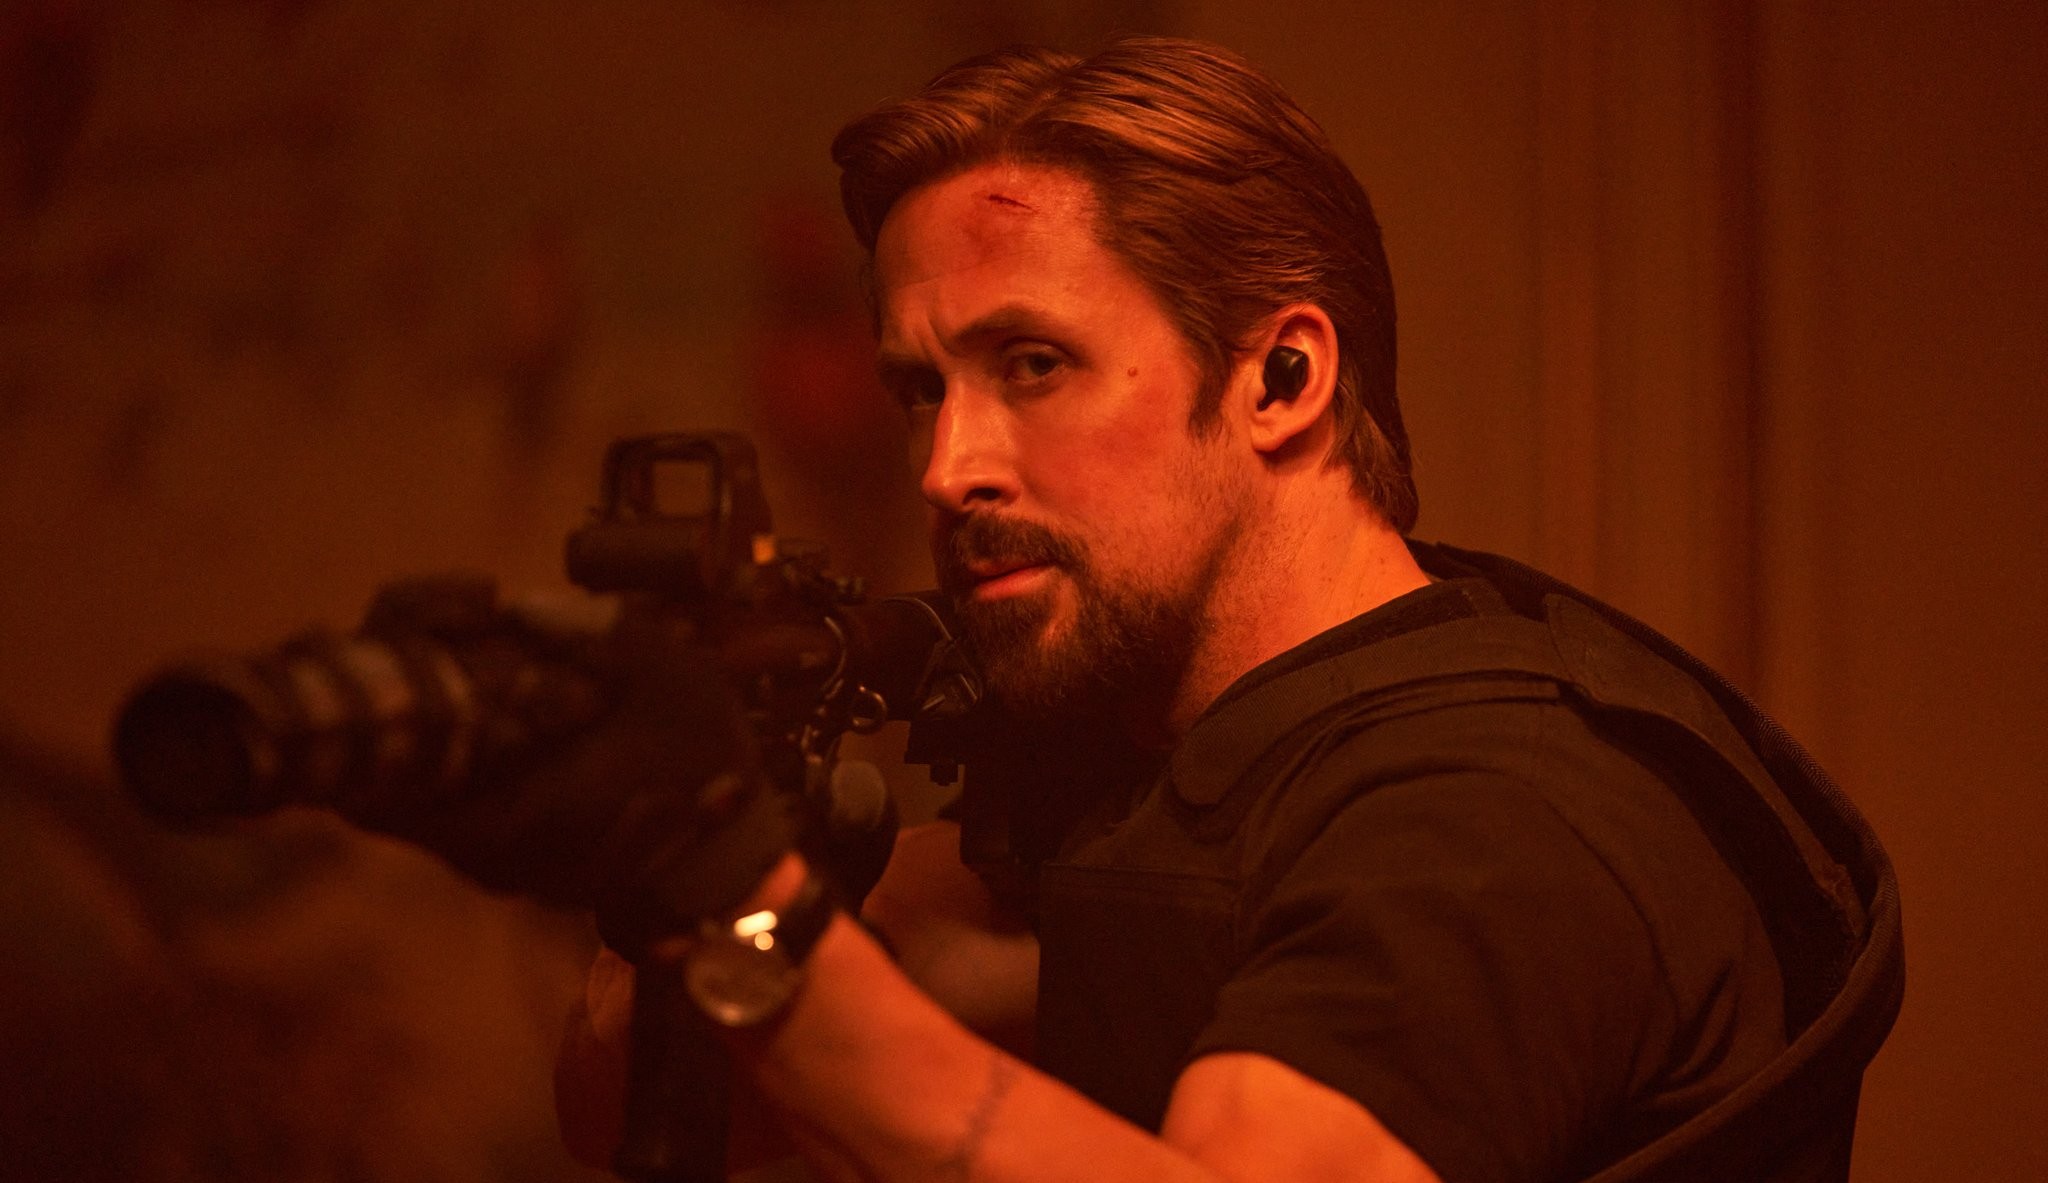 Filme protagonizado por Ryan Gosling ganha seu primeiro trailer